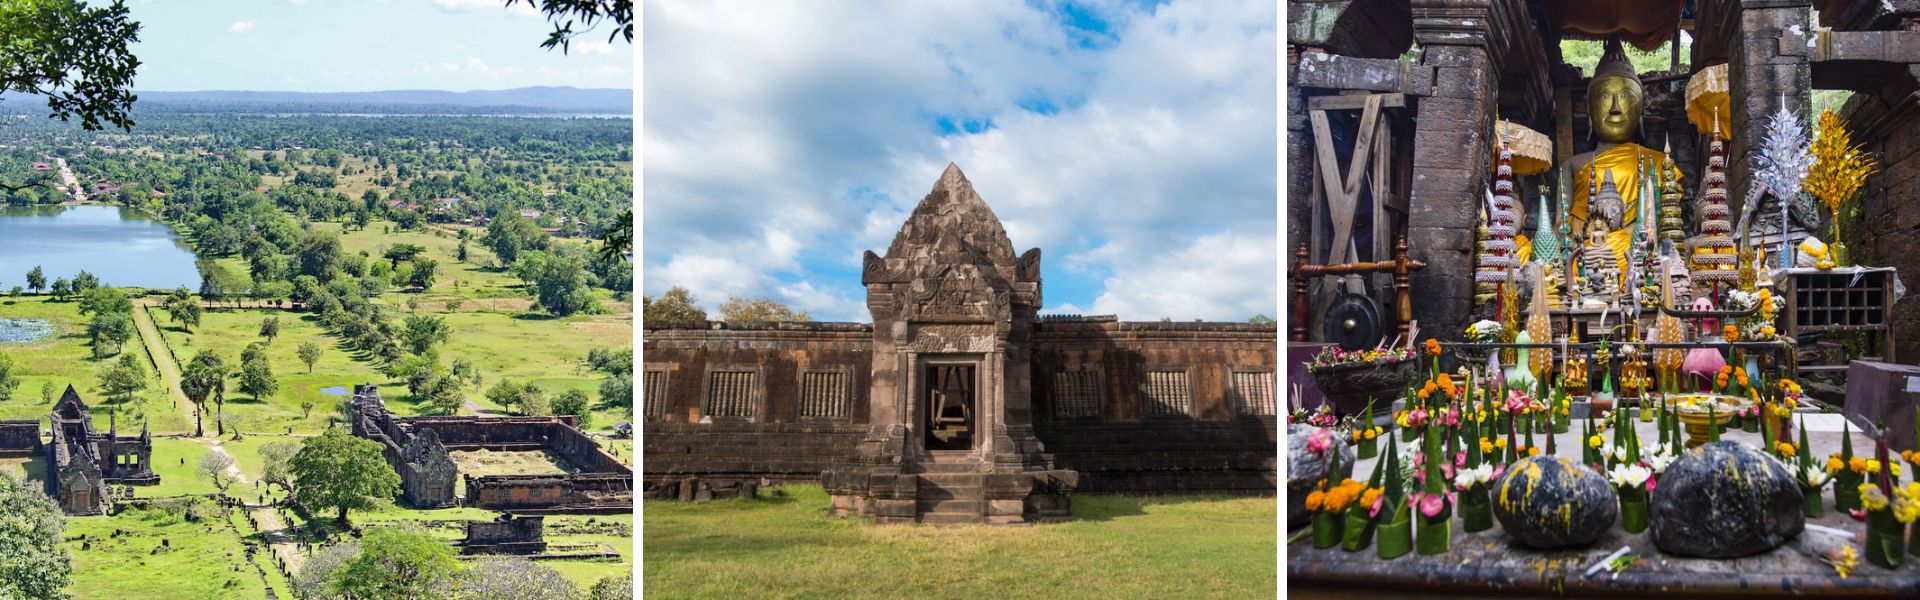 Wat Phu - il tempio più antico del Laos